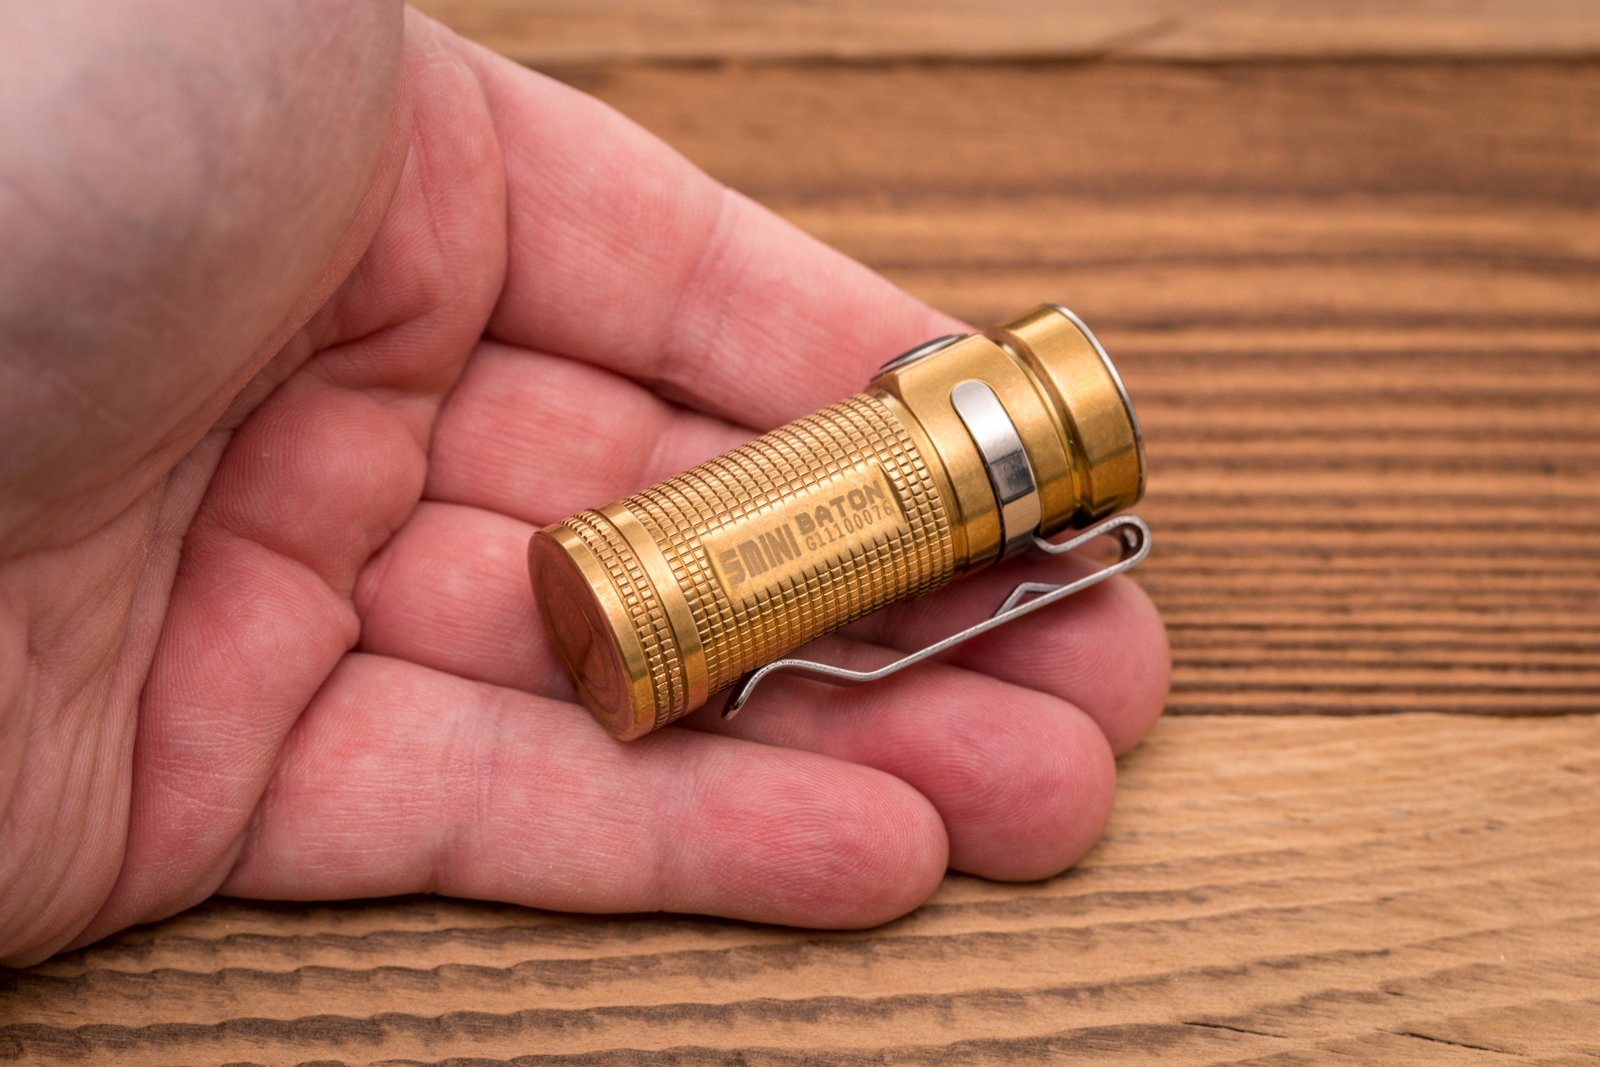 Olight - S Mini Baton Raw Brass